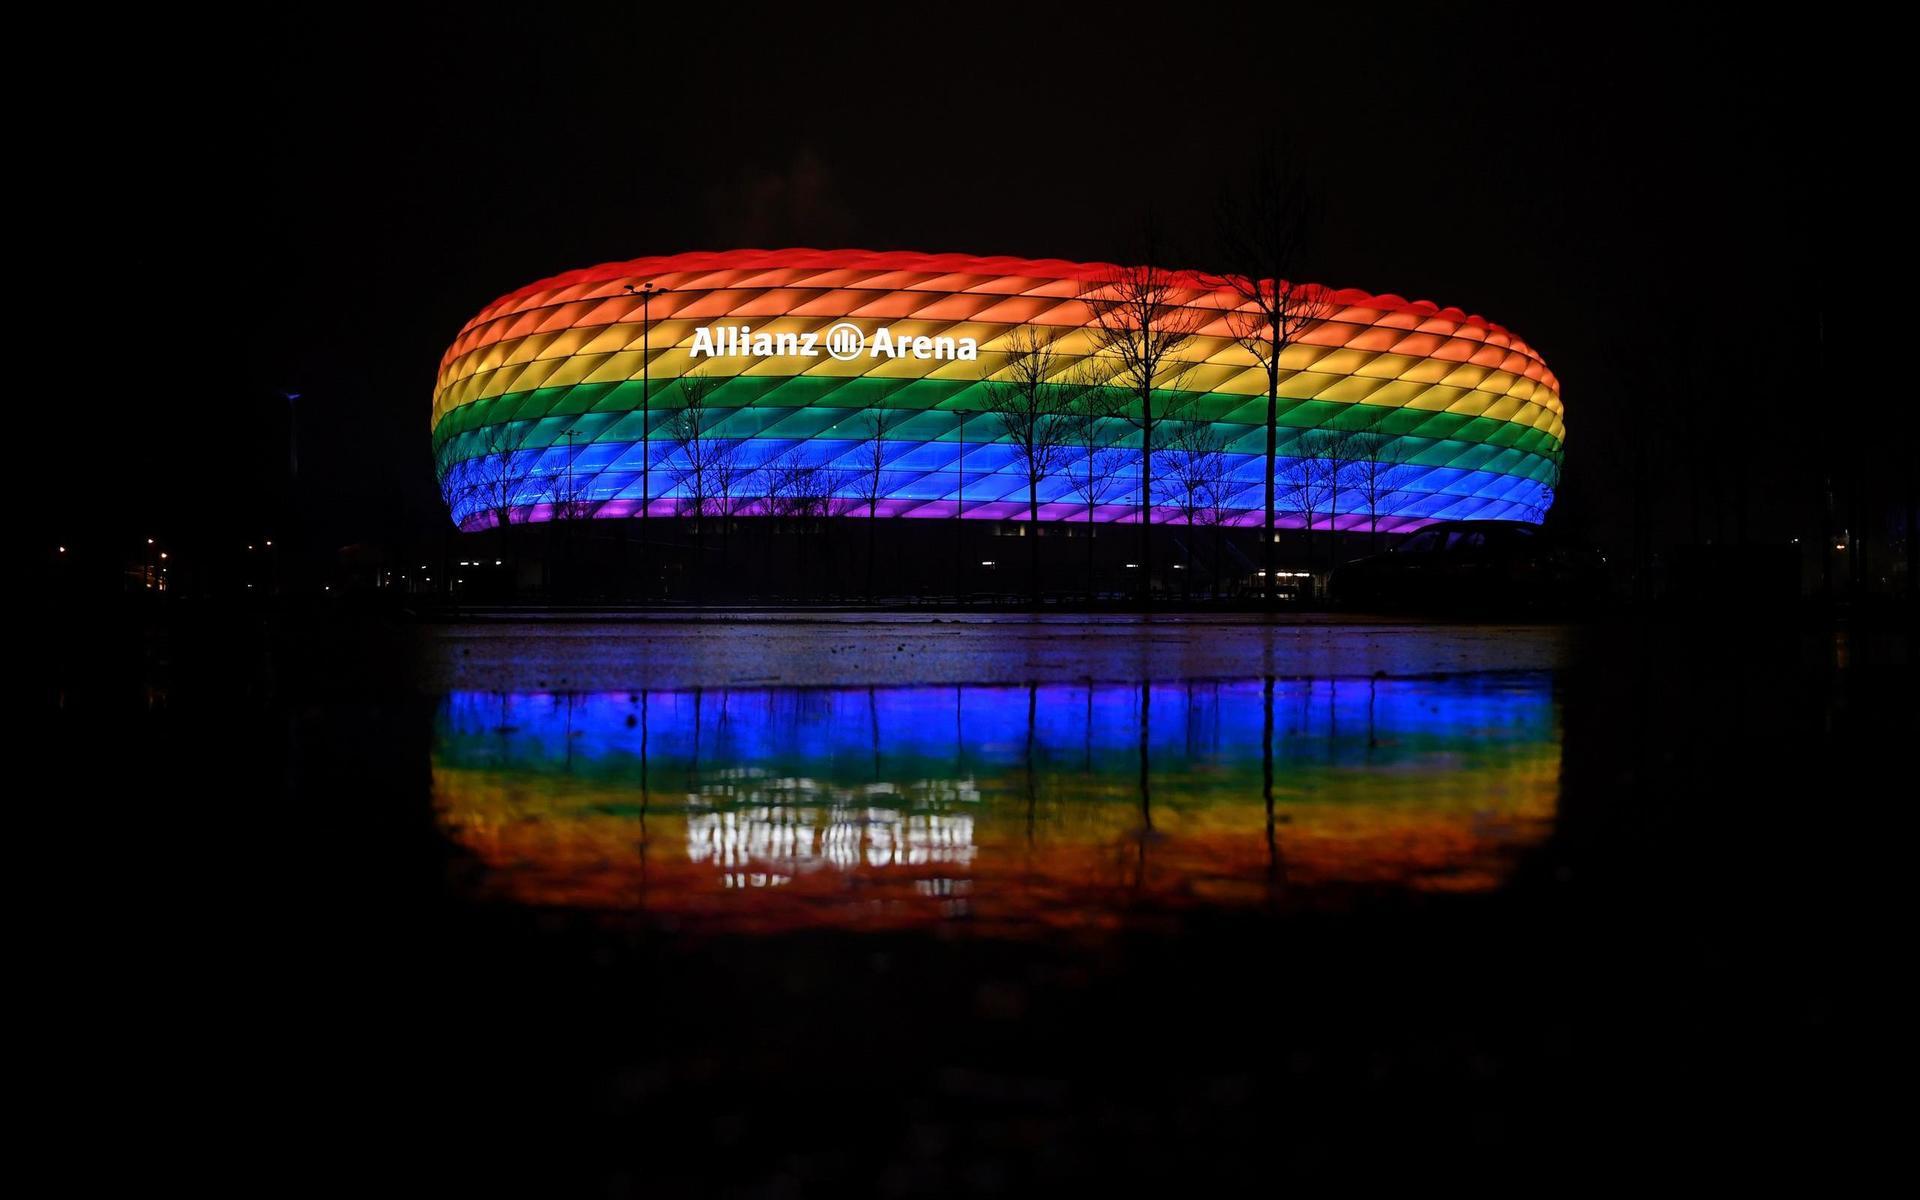 Allianz arena var planerad att lysa i regnbågens färger under Tysklands möte med Ungern. 